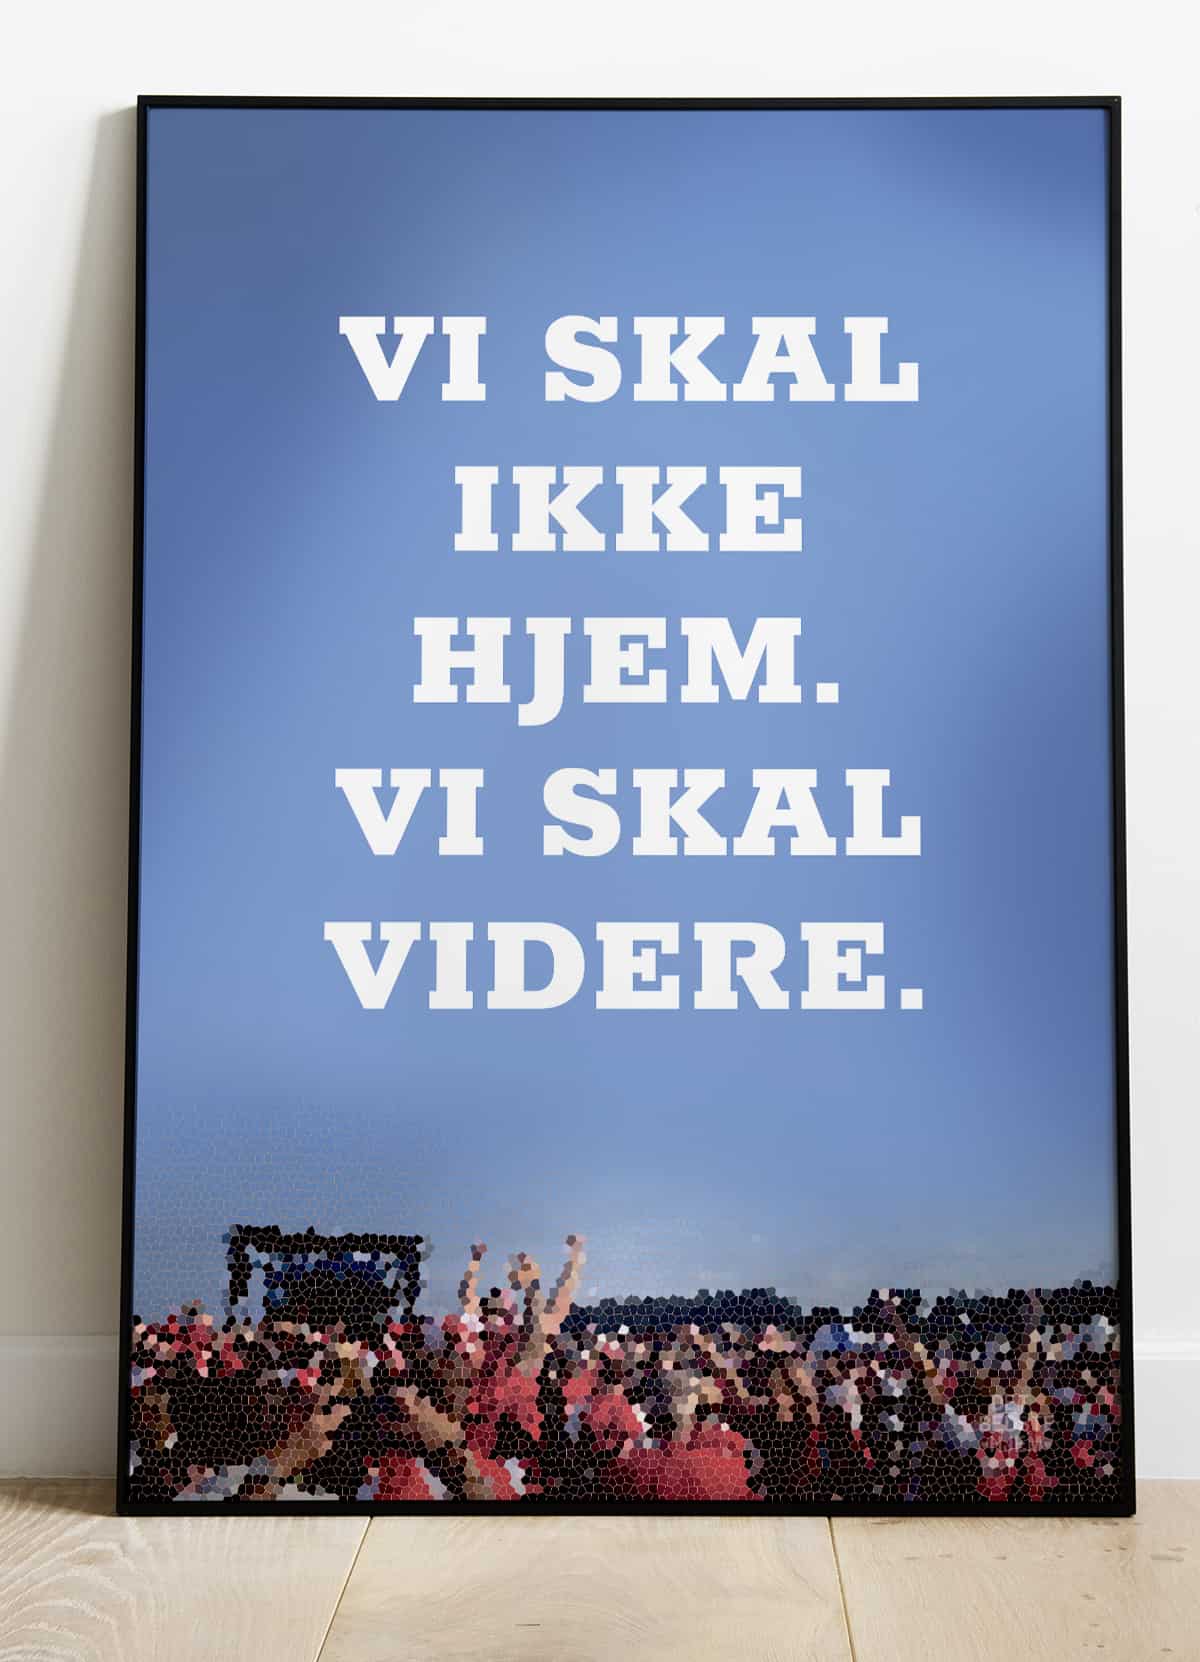 Se Vi skal ikke hjem vi skal videre-plakat - 21 x 29,7 (A4) Kr. 199,- hos Detbedstehjem.dk